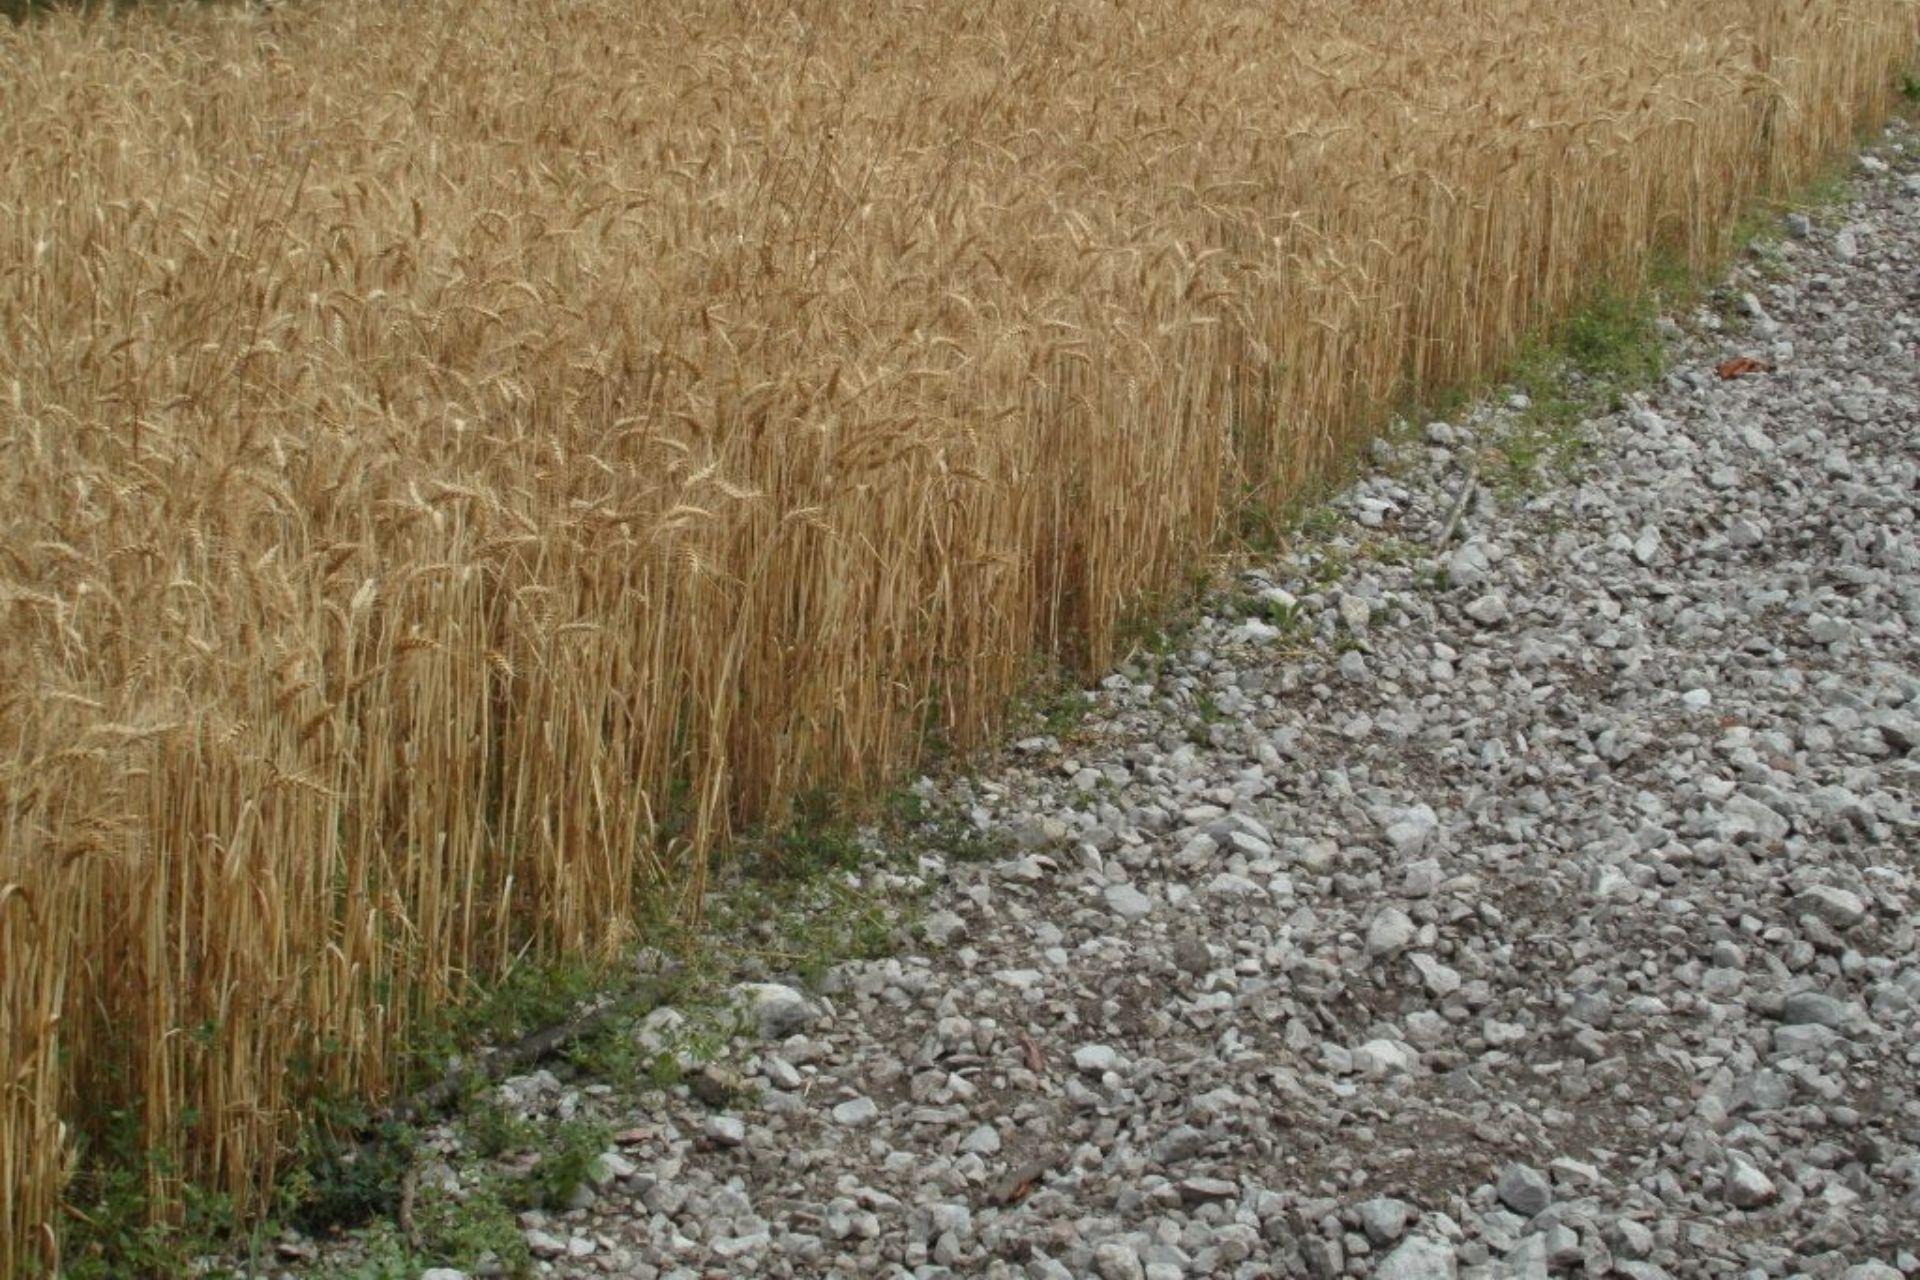 Coltivazione-di-grano-con-BioAksxter-su-terreno-pietroso-Wheat-cultivation-with-BioAksxter-on-stony-soil.jpg